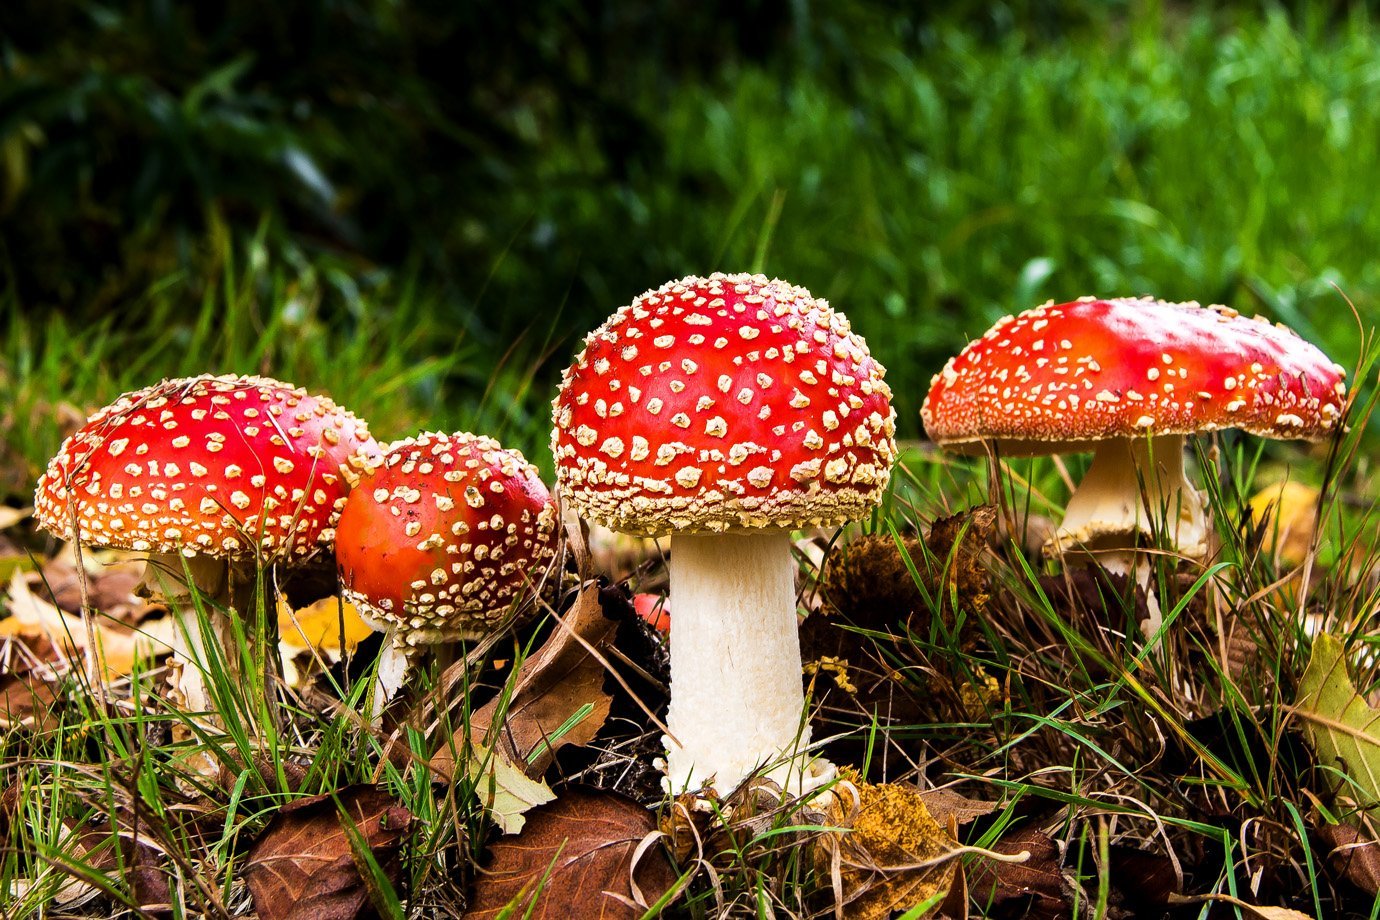 Cogumelos alucinógenos são a droga mais segura, diz estudo | Exame